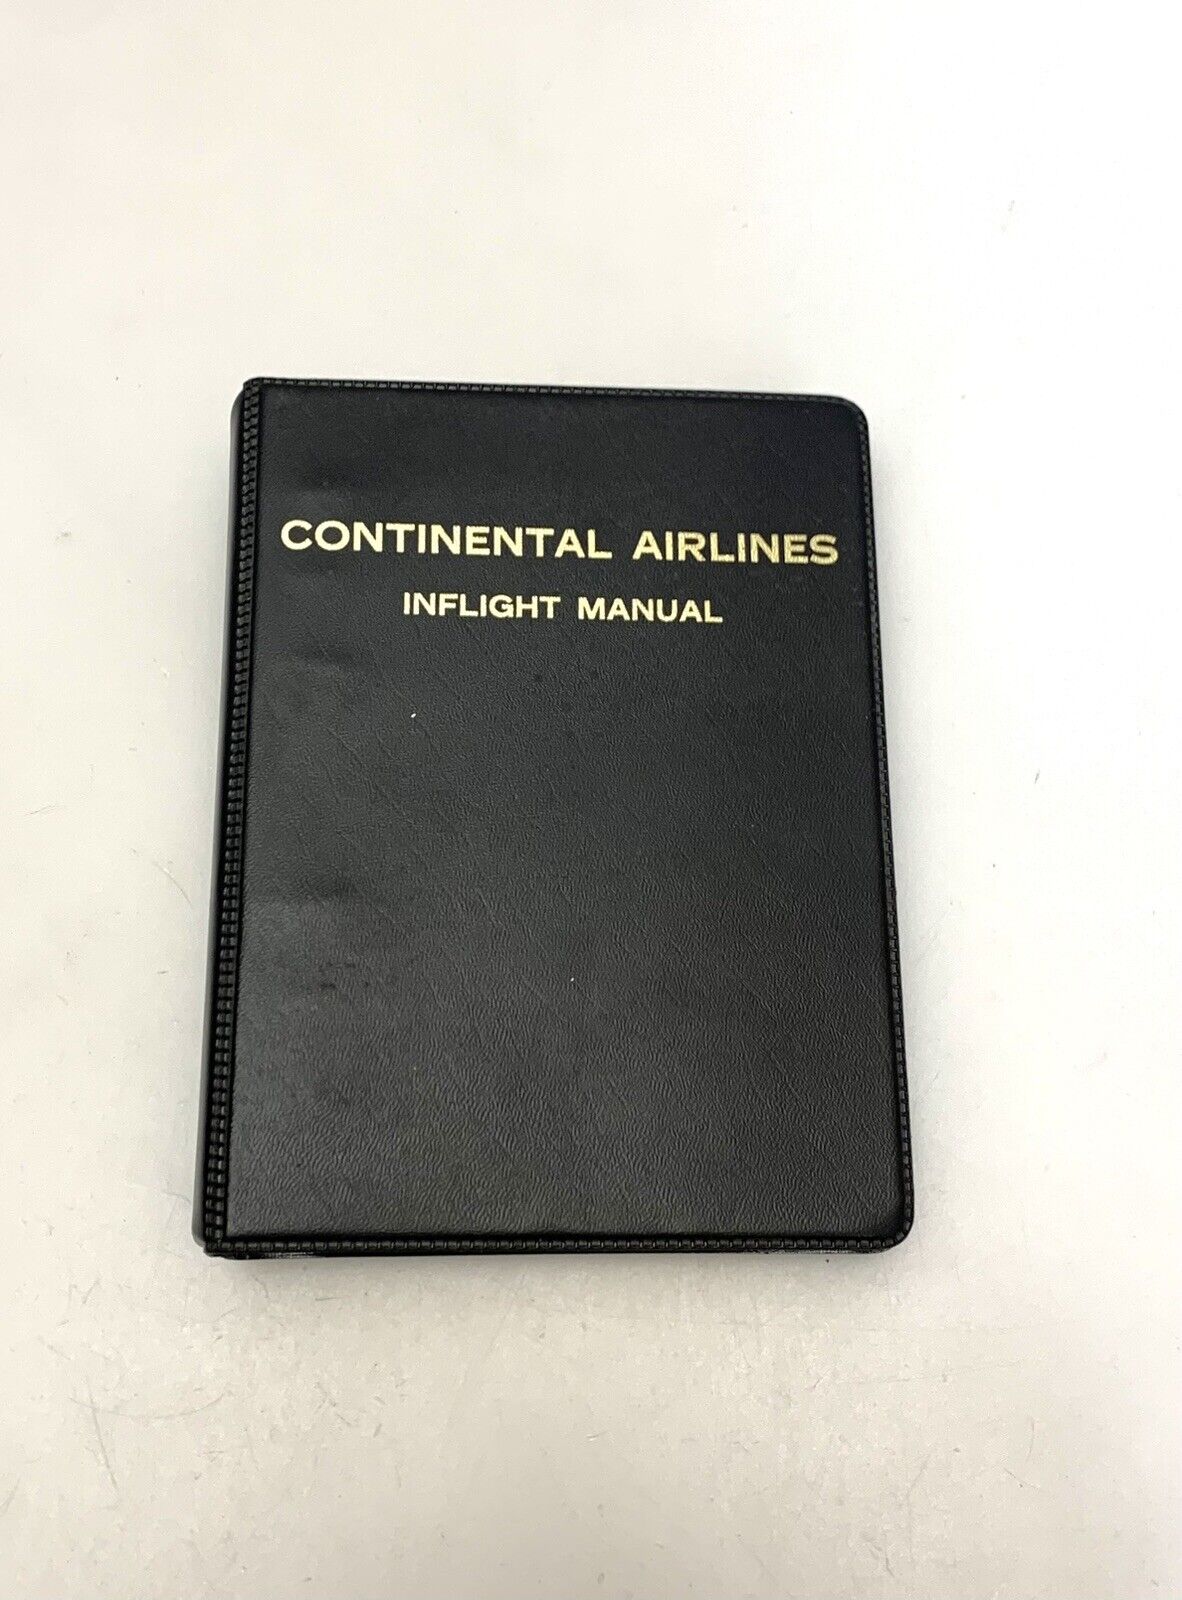 1985 Continental Airlines Inflight Manual Flight Attendant Stewardess Handbook